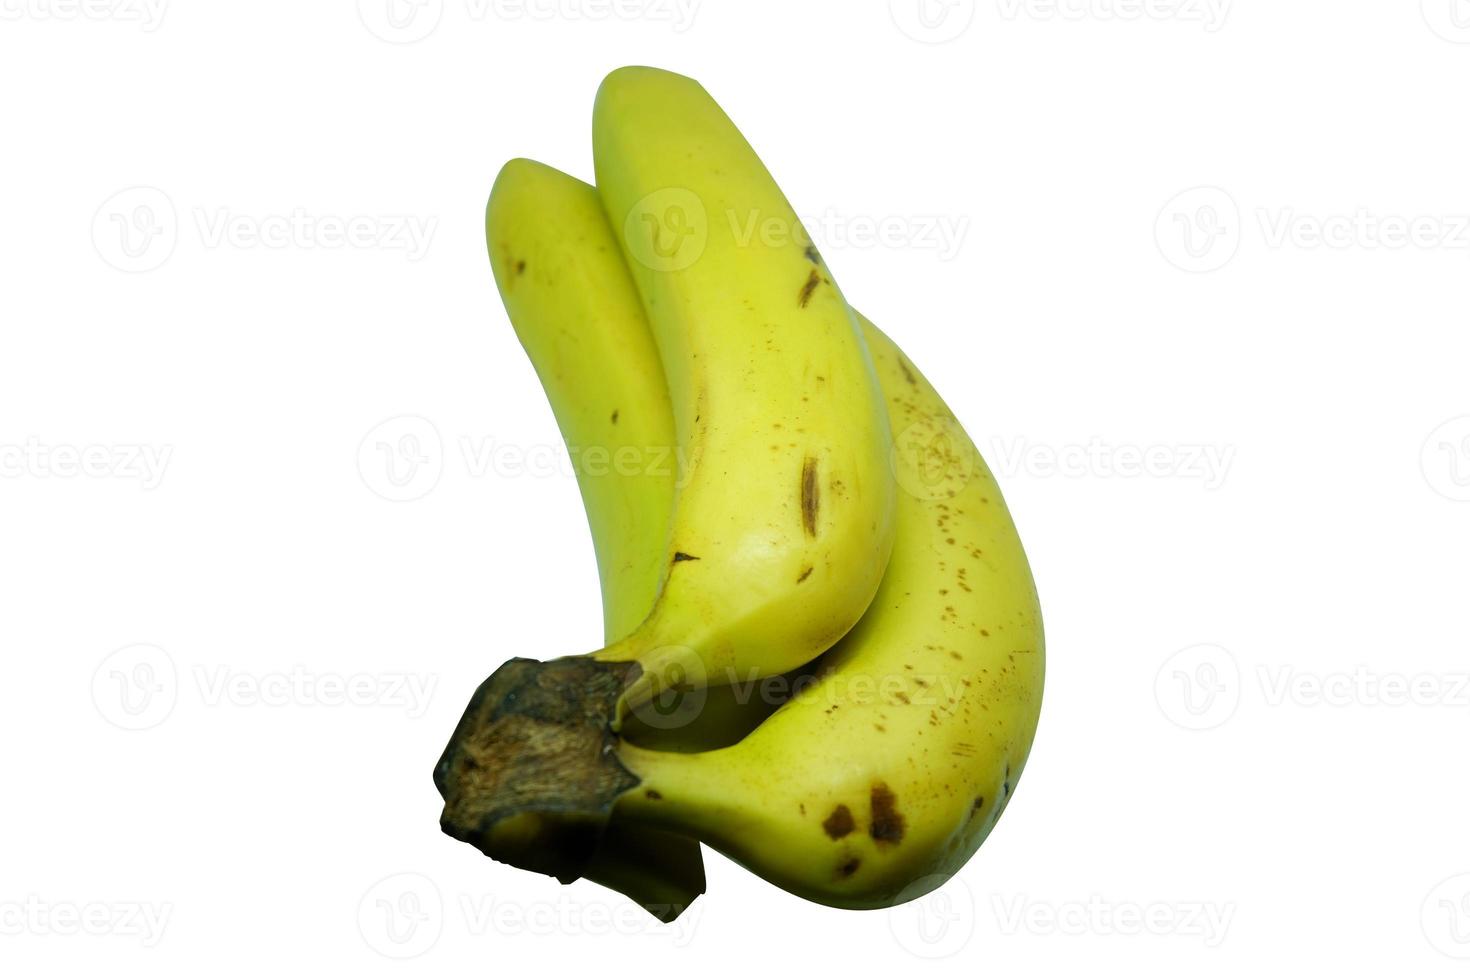 Yellow Banana in white background photo